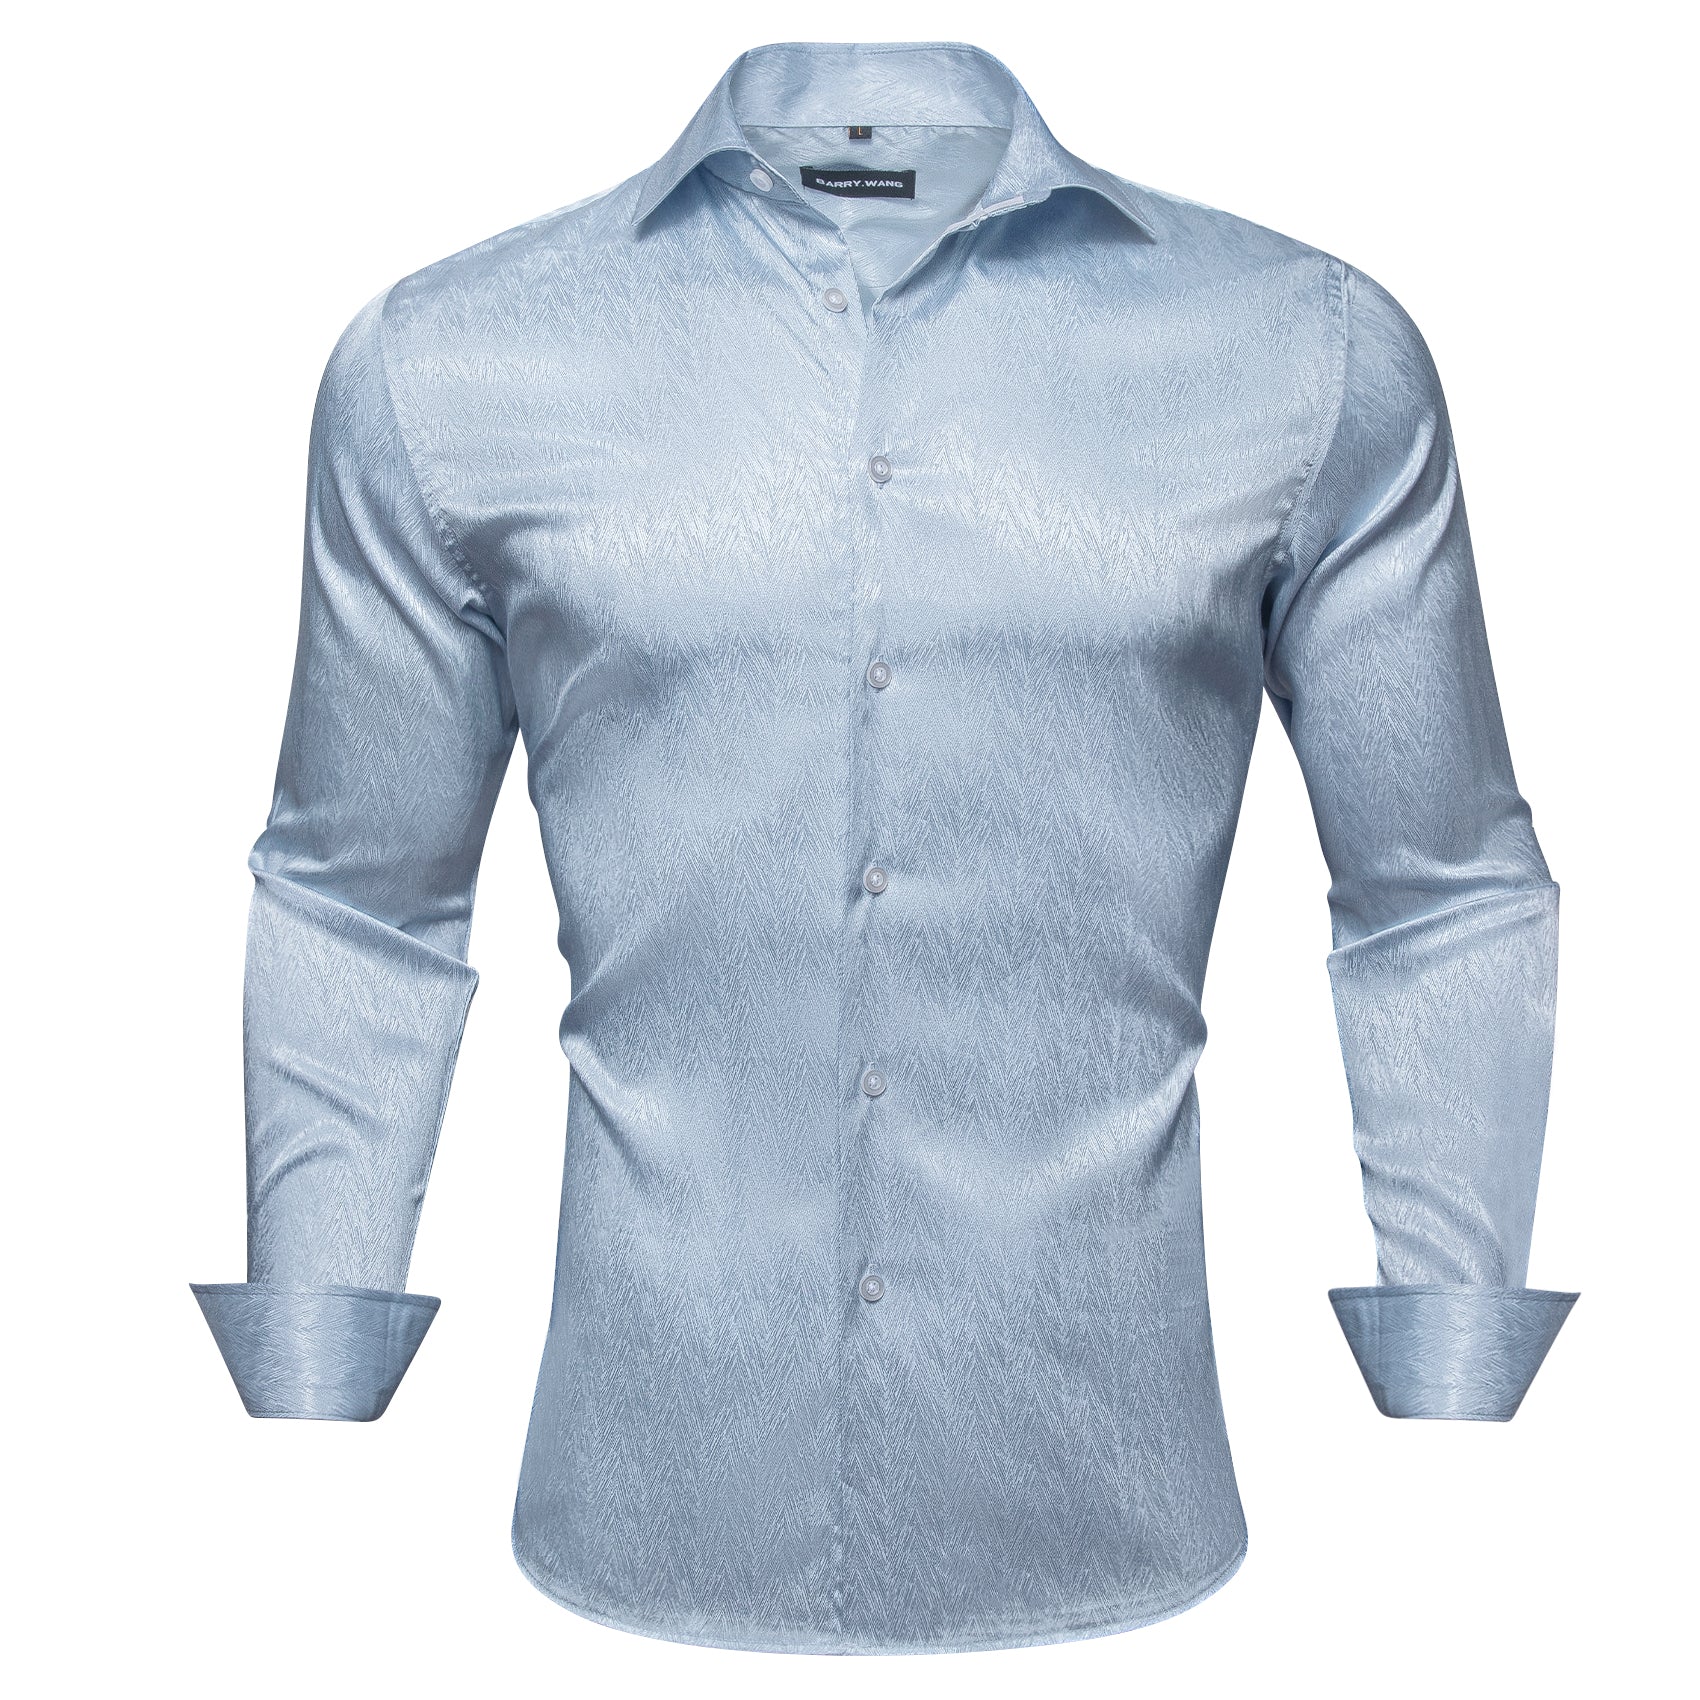 Barry.wang Light Blue Solid Silk Shirt